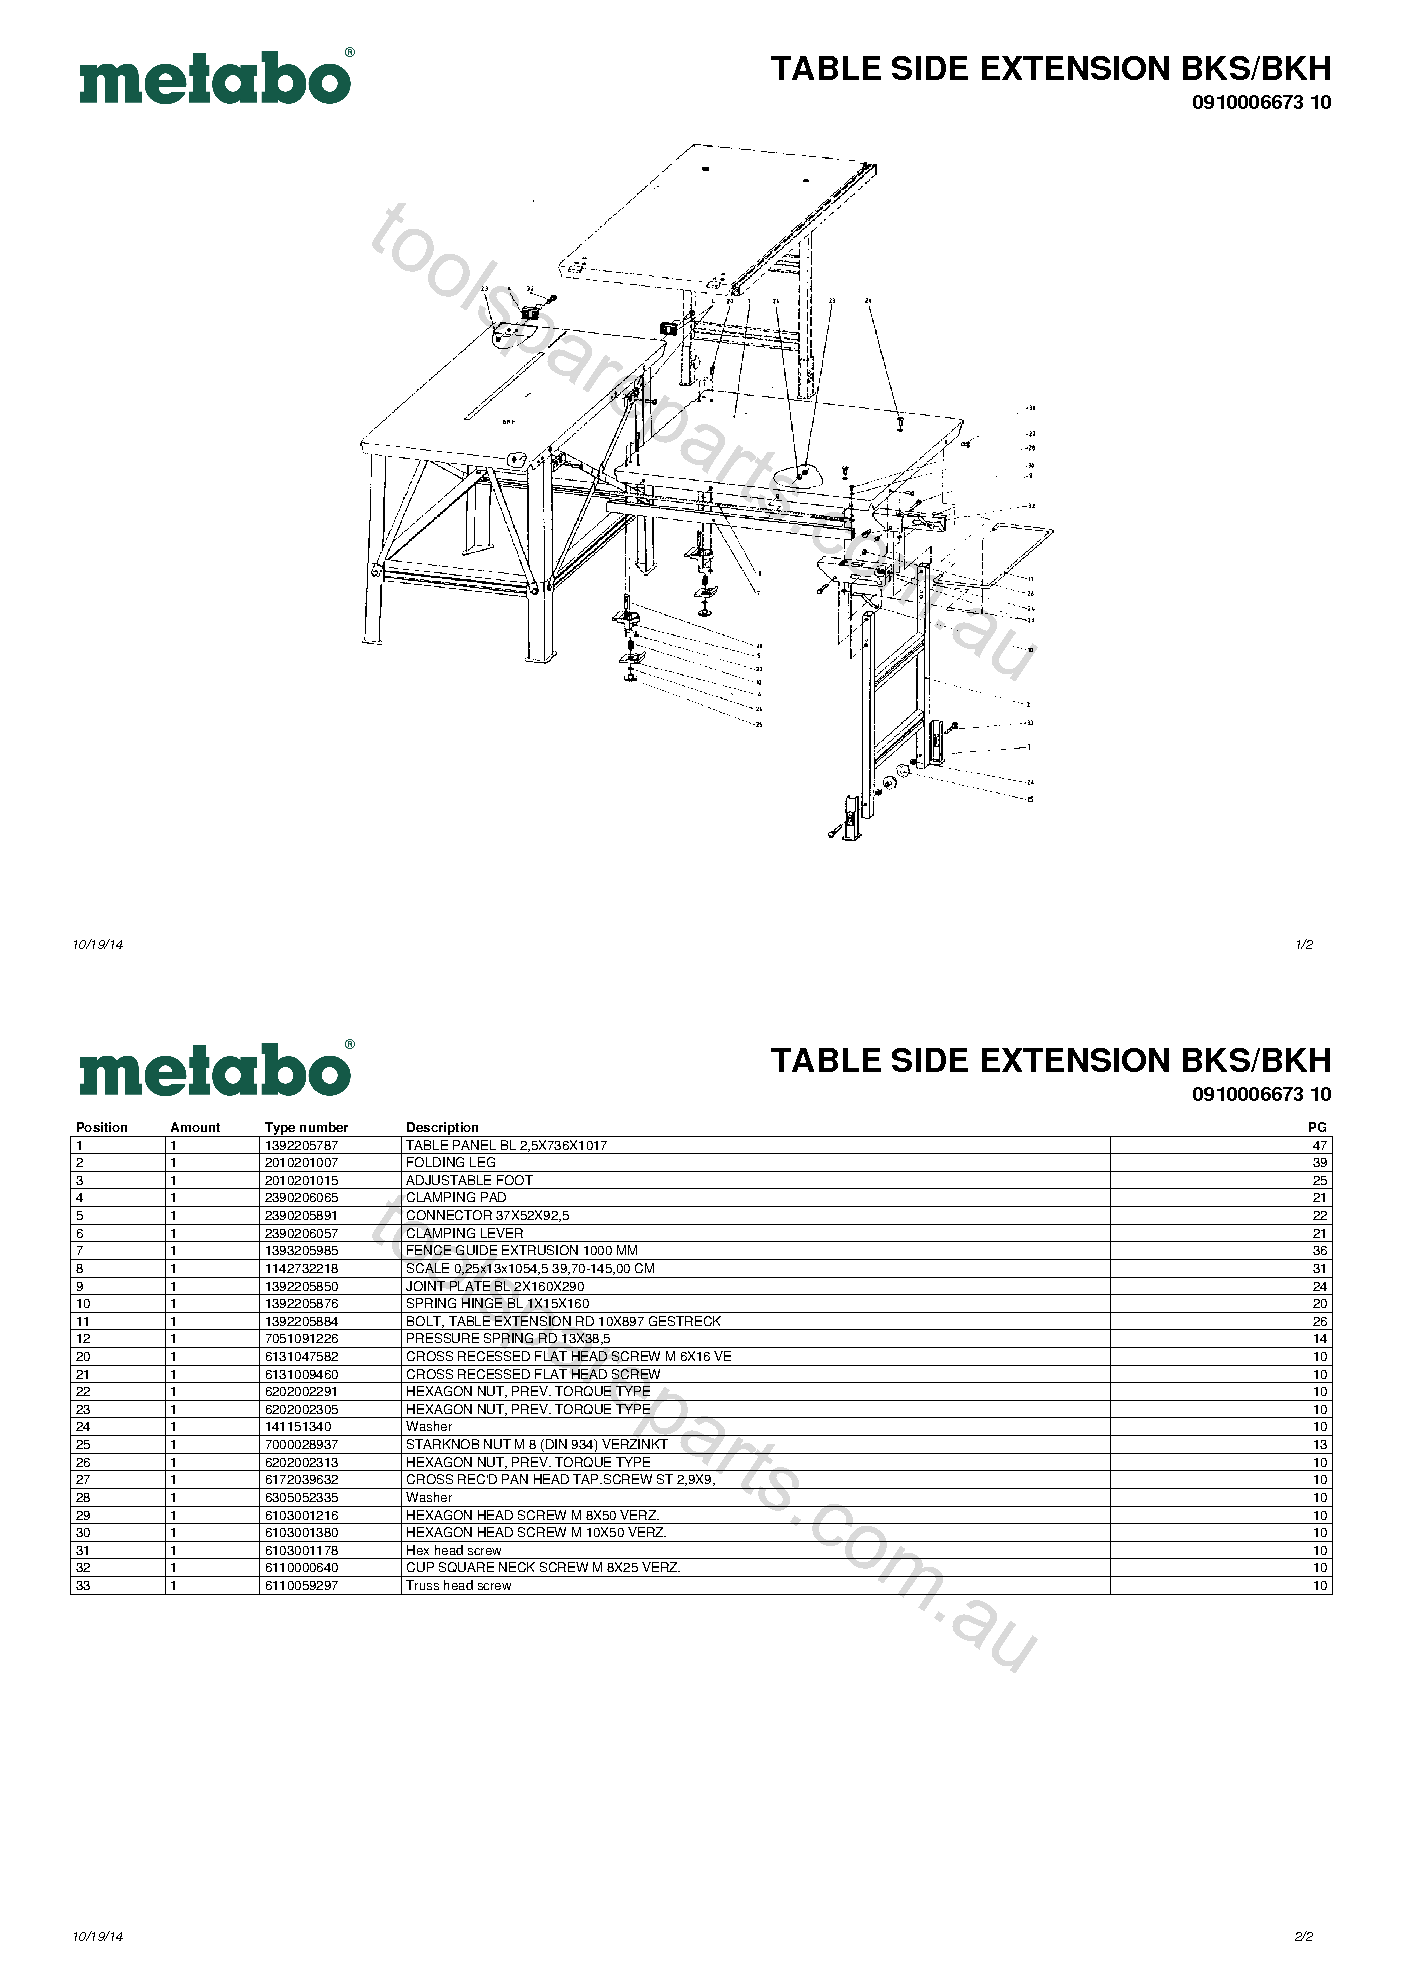 Metabo TABLE SIDE EXTENSION BKS/BKH 0910006673 10  Diagram 1